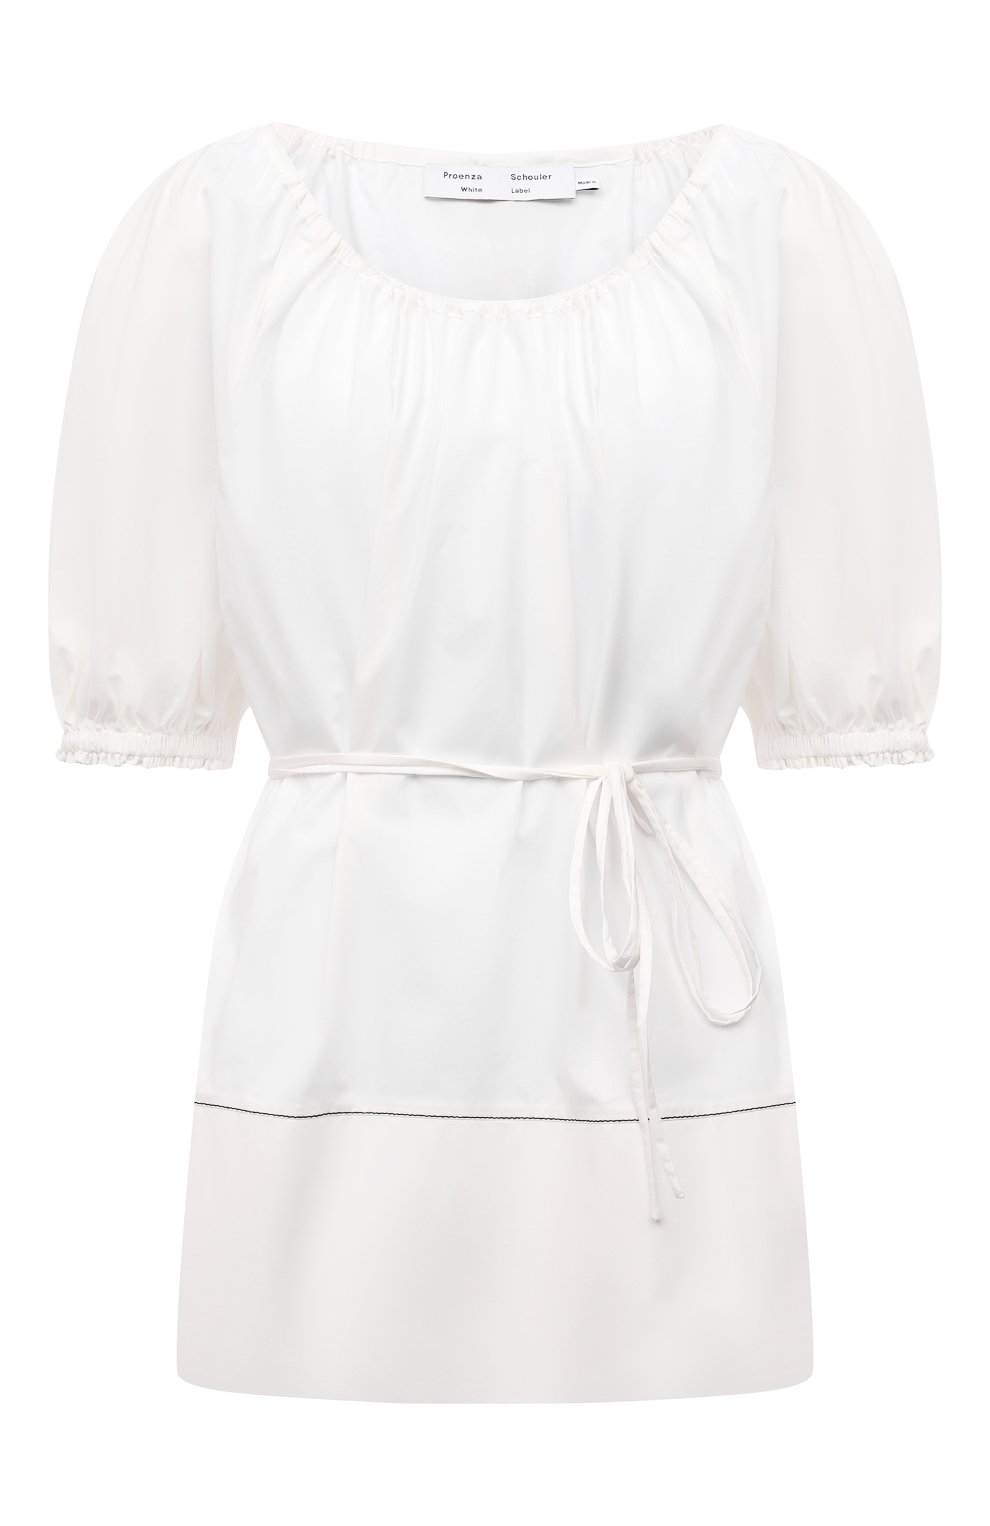 Блузы Proenza Schouler White Label, Хлопковая блузка Proenza Schouler White Label, Китай, Белый, Хлопок: 100%;, 11901905  - купить